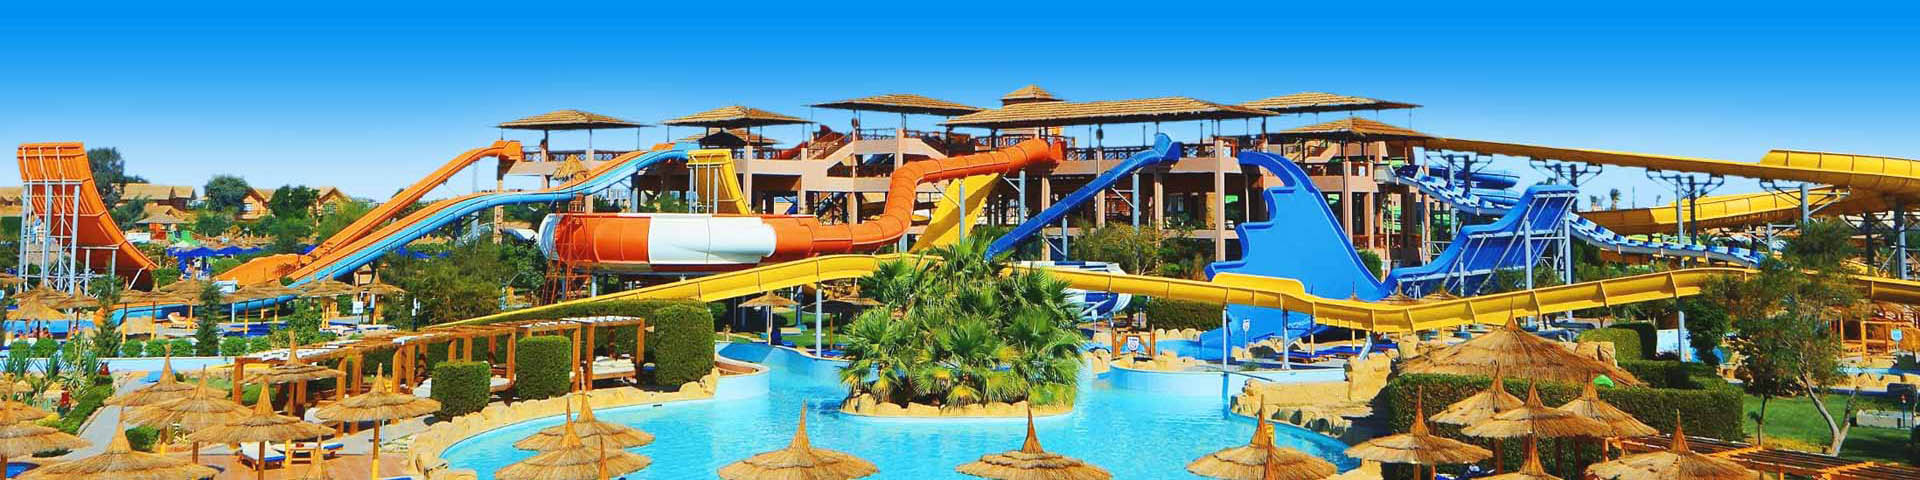 Waterpark met glijbaan en zwembad in Egypte